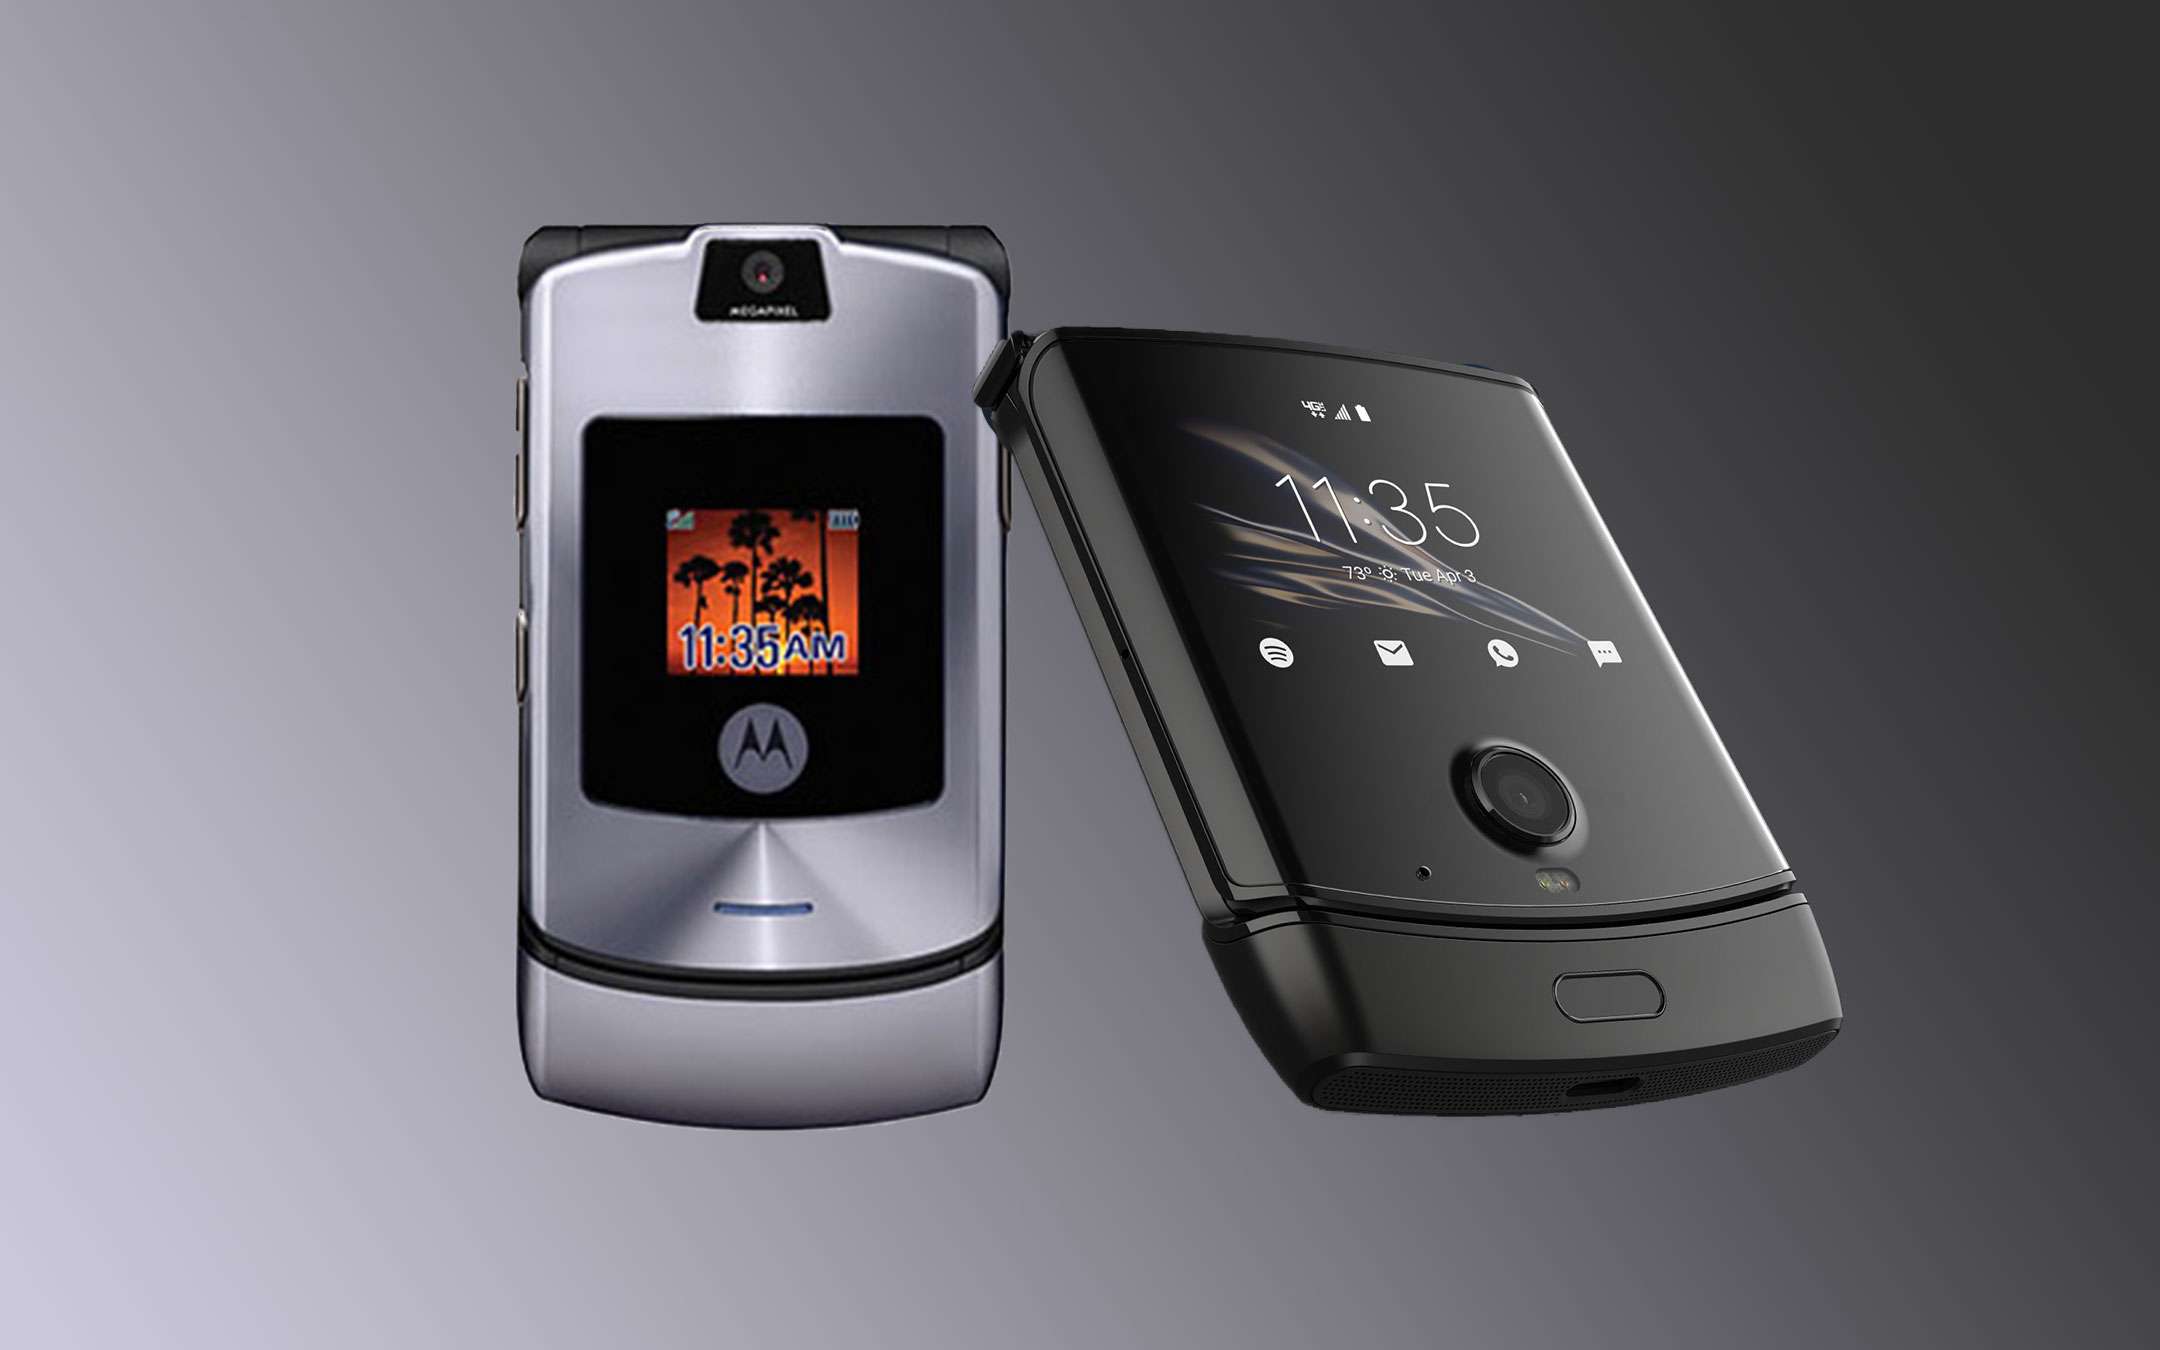 Motorola razr: meglio vecchio o nuovo? (SONDAGGIO)